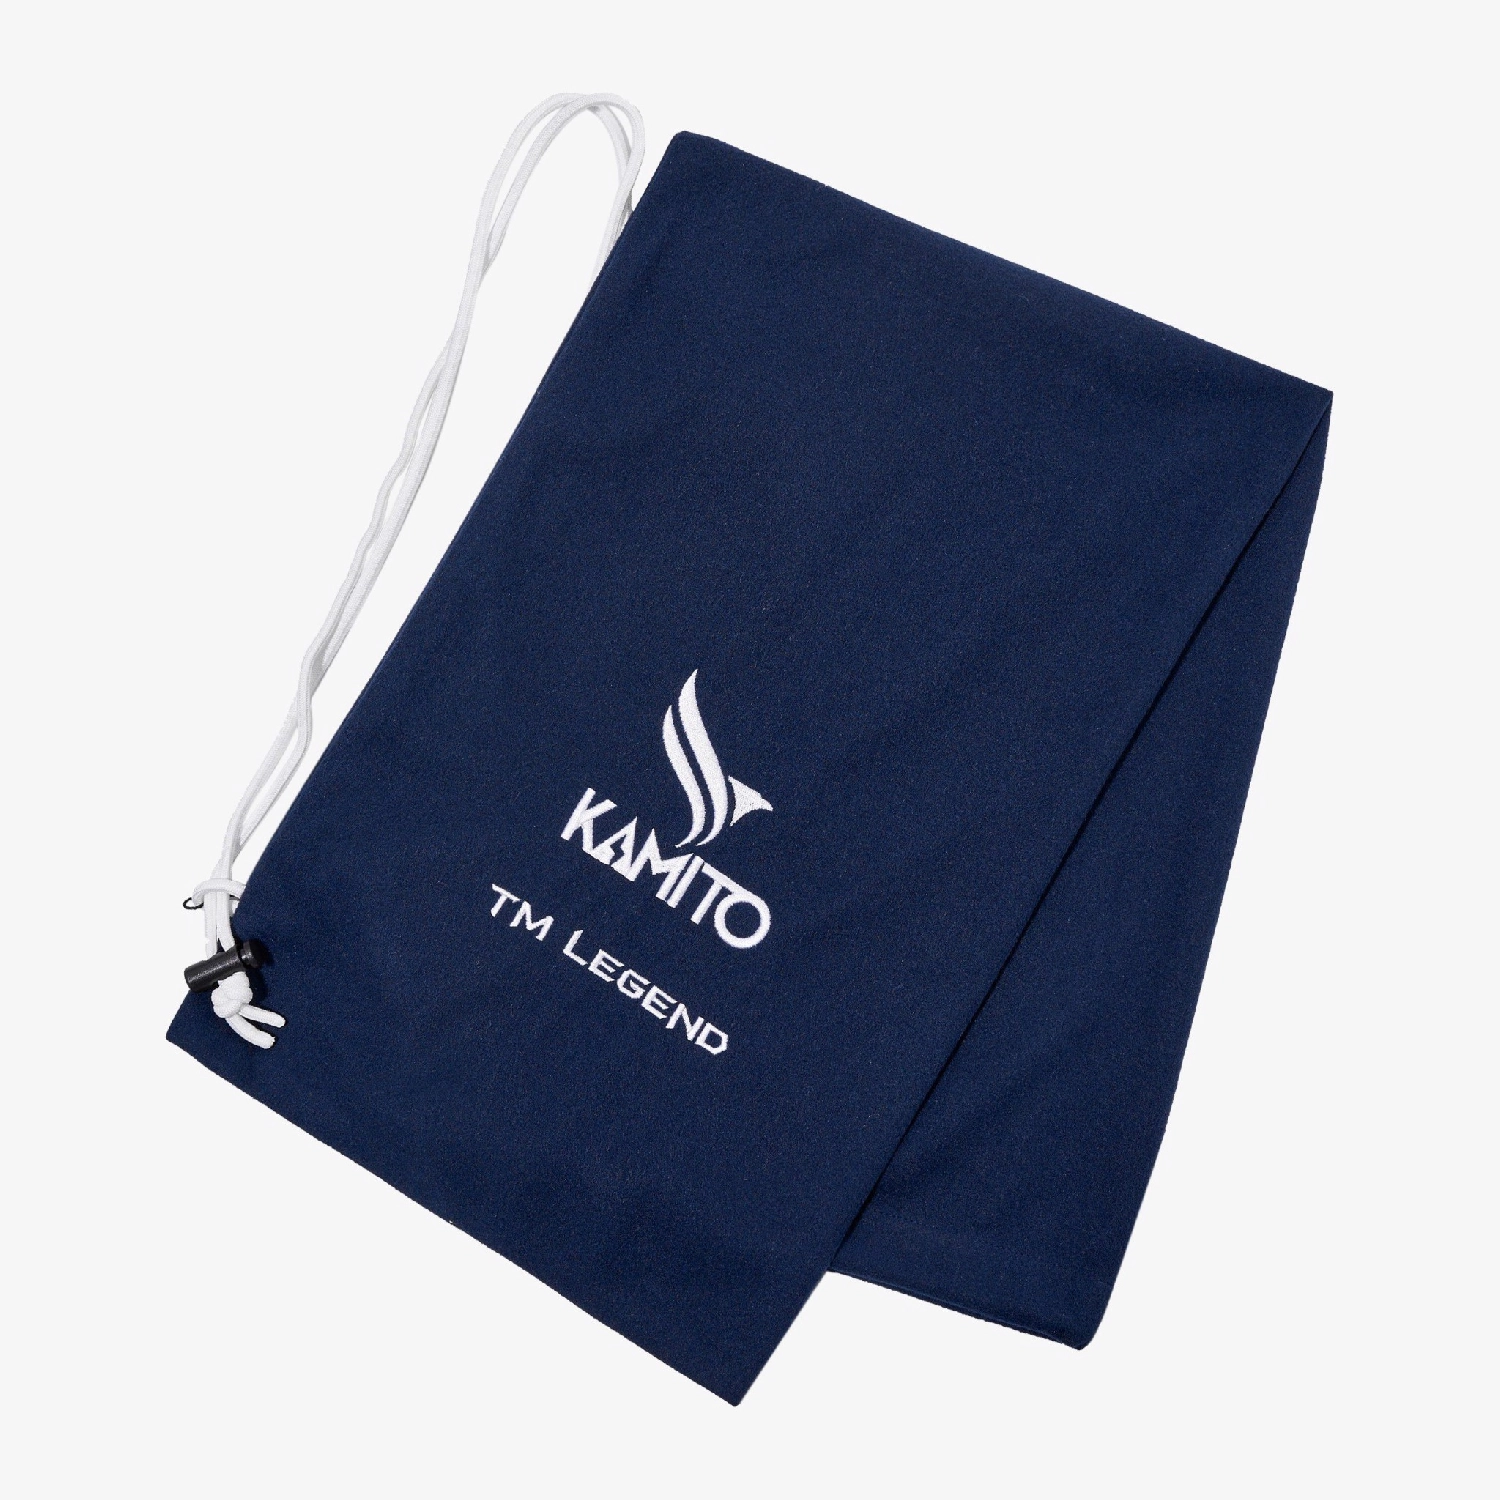 Túi cầu lông Kamito TM Legend KMTUI230523 - Navy chính hãng